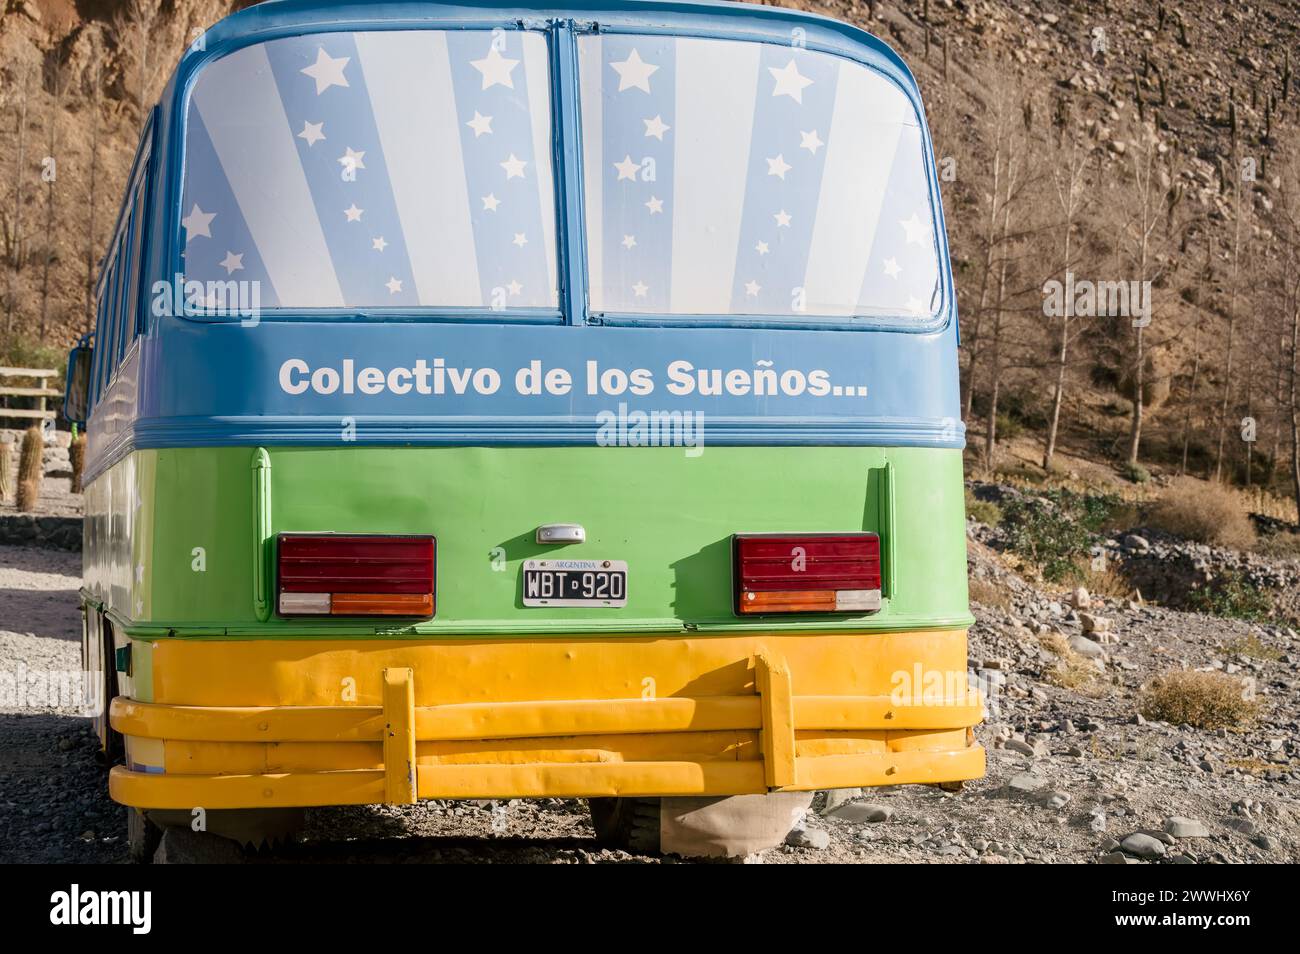 Rosario de Lerma, Salta, June 5th 2018: The colorful Dream Collective (Colectivo de los sueños) bus Stock Photo